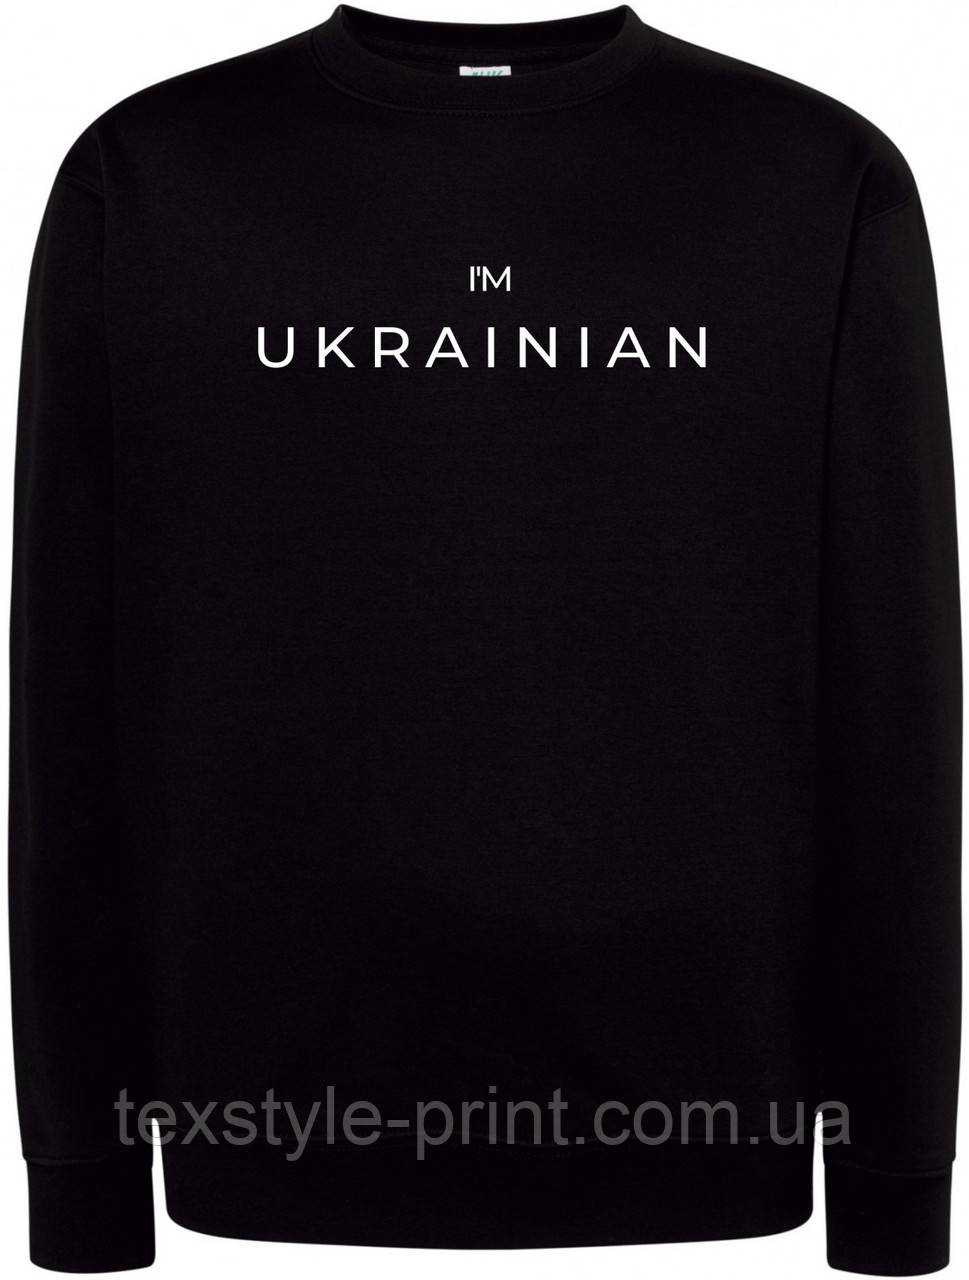 Сувітшот з печаткою I'M UKRAINIAN Чорний розмір M